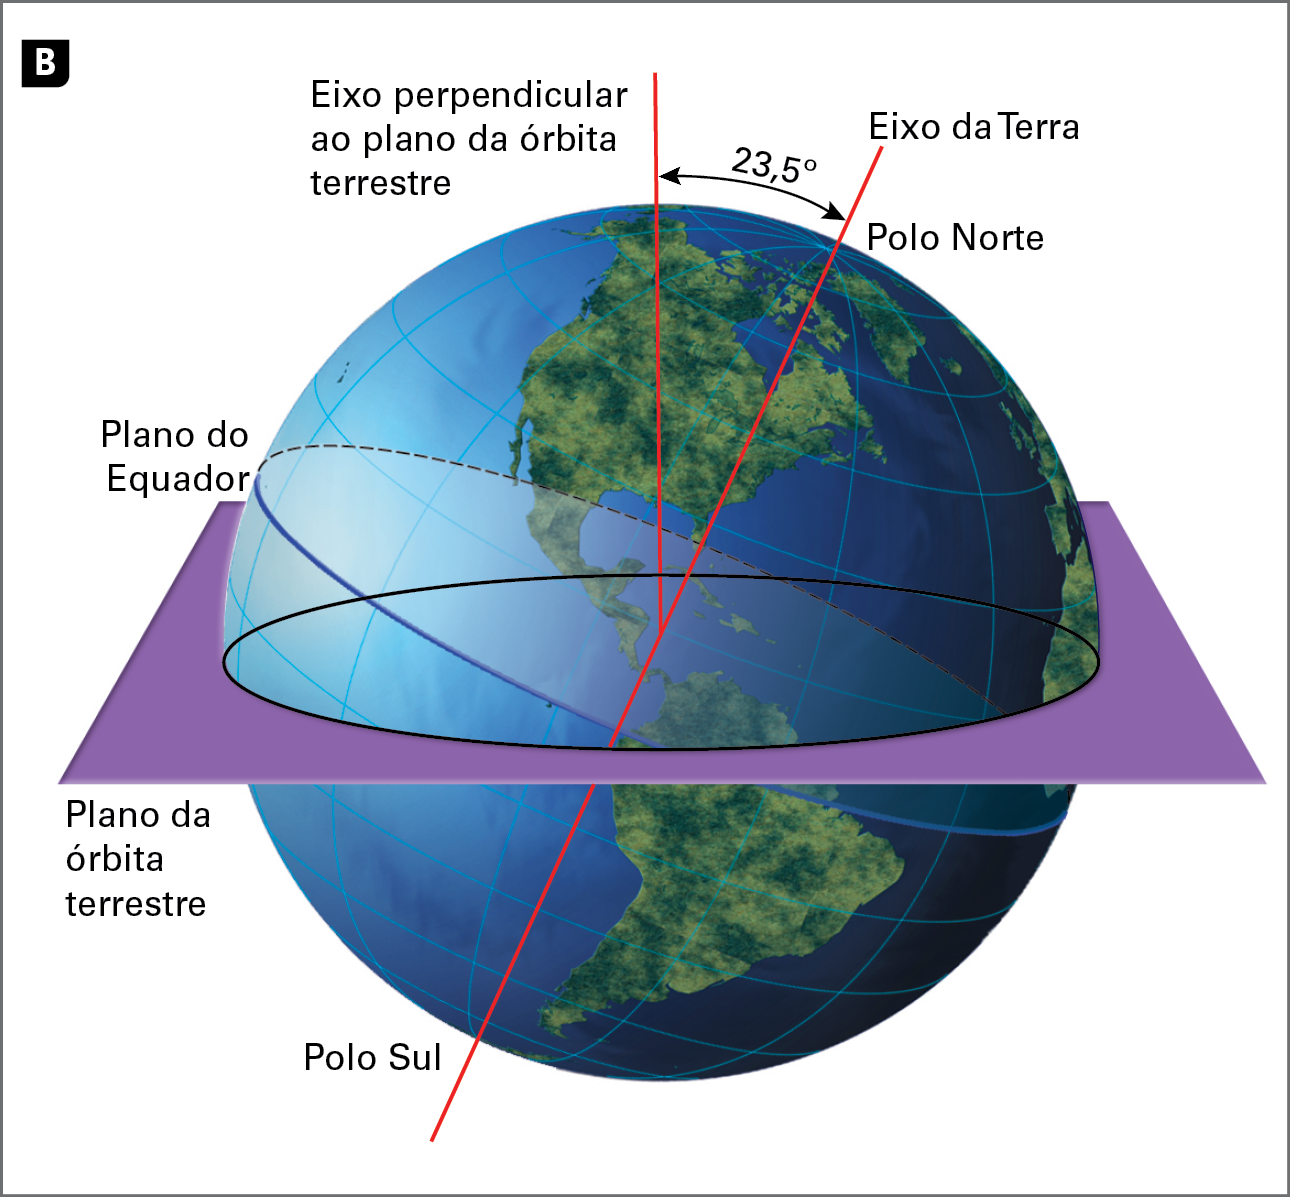 Ilustração. Eixo da Terra. Globo terrestre; no centro, uma placa plana que está ao seu redor chamada de plano da órbita terrestre. Um círculo na diagonal chamado de plano do Equador está no centro do globo. Uma linha traçada de polo a polo (polo Sul a polo Norte) é  chamada de eixo da Terra e é levemente inclinada à direita. Uma reta vertical que sai do centro do plano do Equador é chamada de eixo perpendicular ao plano da órbita terrestre. O ângulo formado entre o eixo da Terra e o eixo perpendicular ao plano da órbita terrestre é de 23,5 graus.